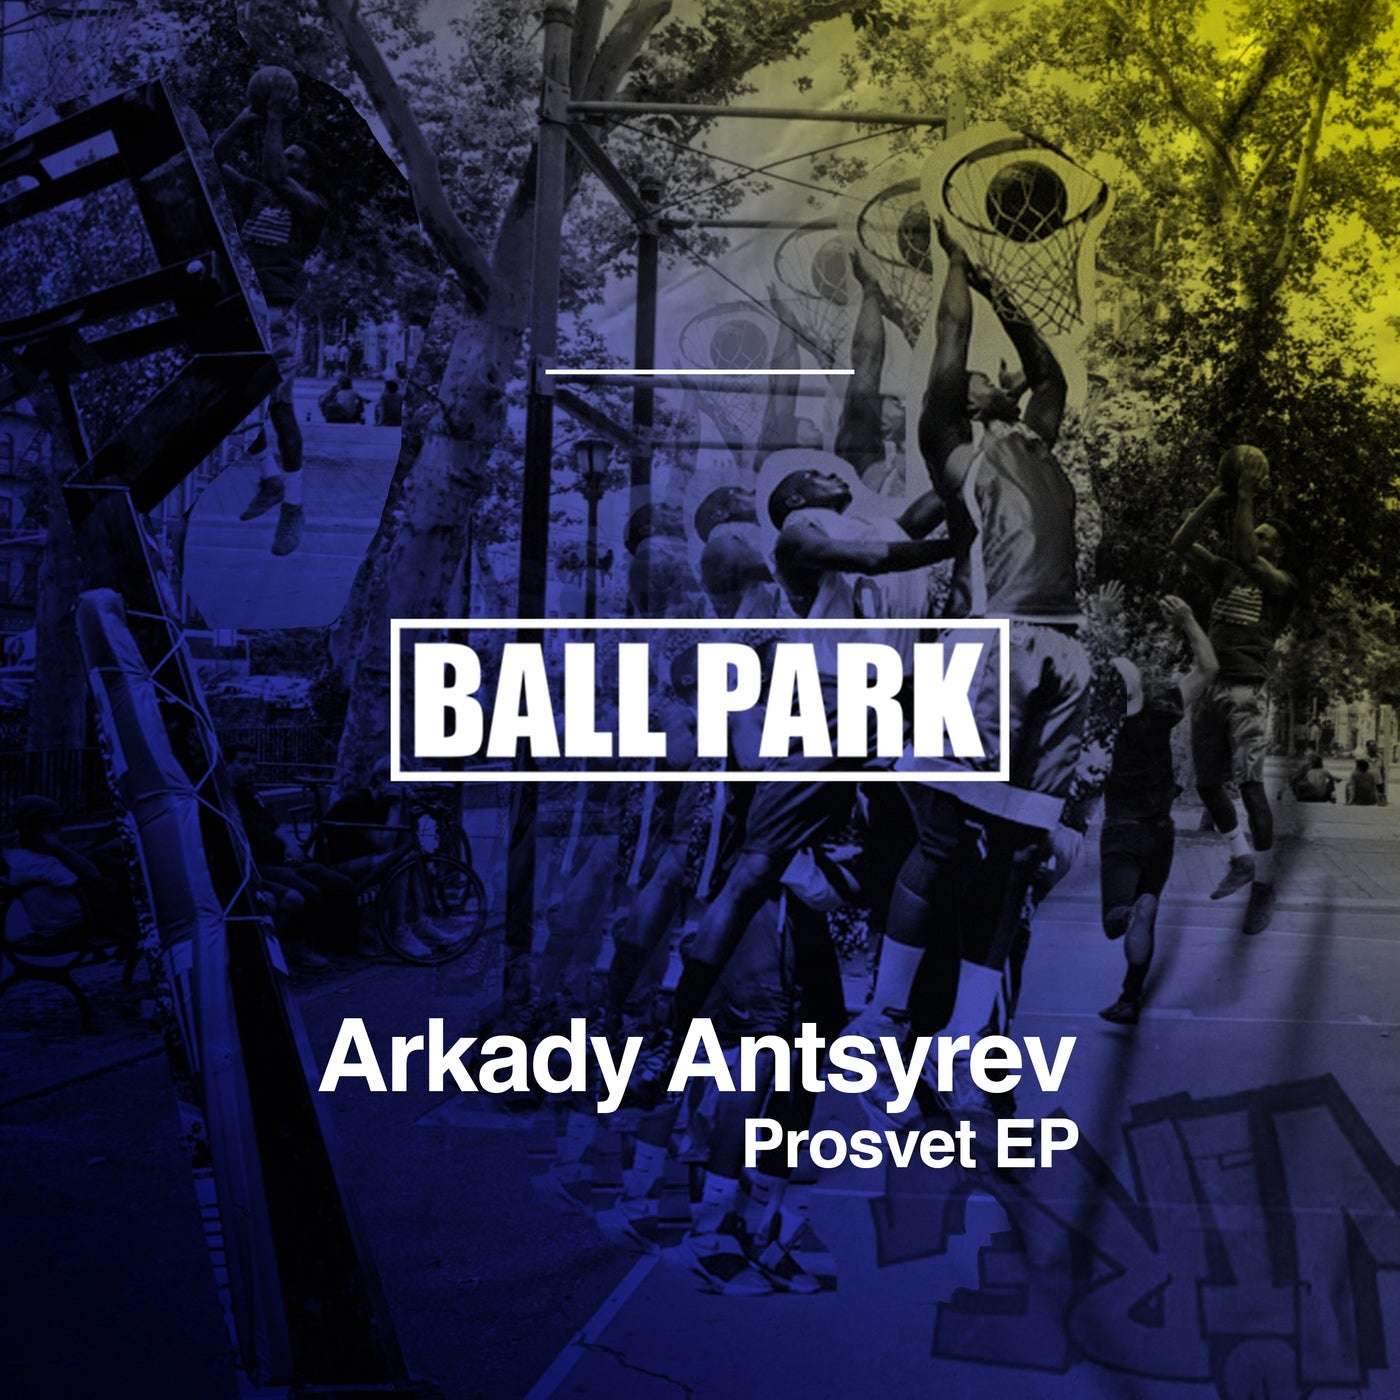 Arkady Antsyrev - Prosvet EP [BALLP10]